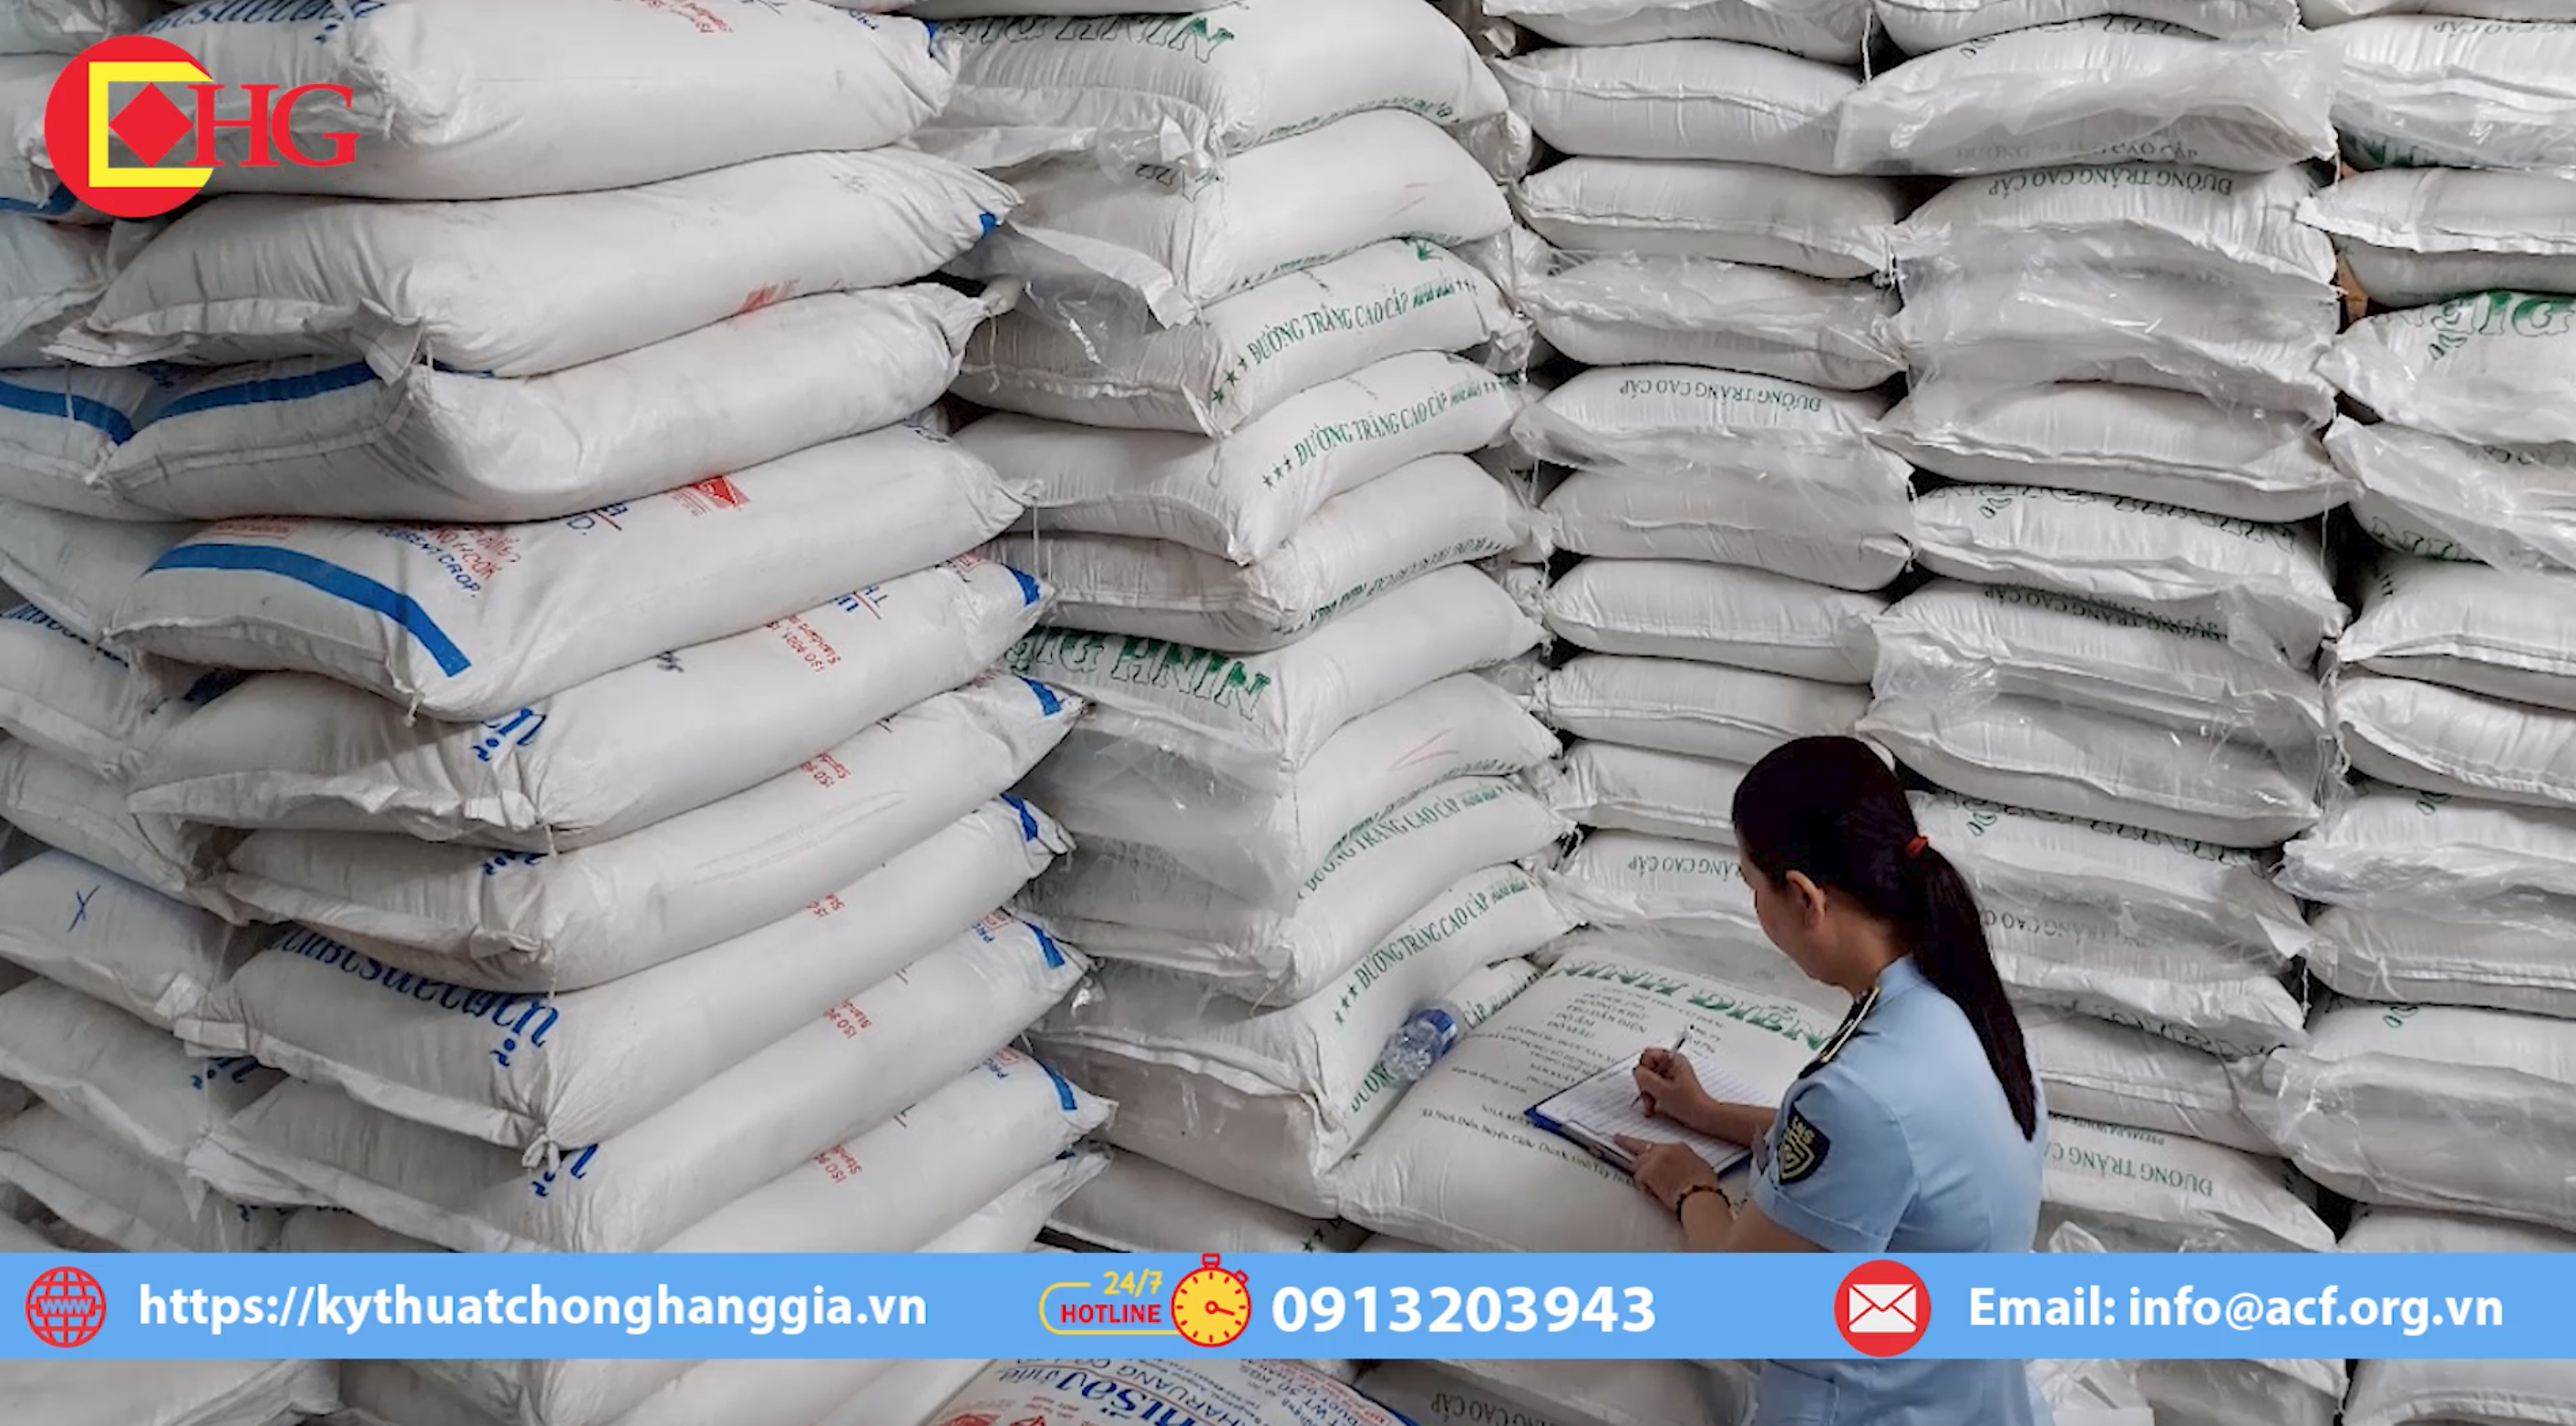 Phát hiện lô đường cát Thái Lan nghi nhập lậu trị giá gần 500 triệu đồng